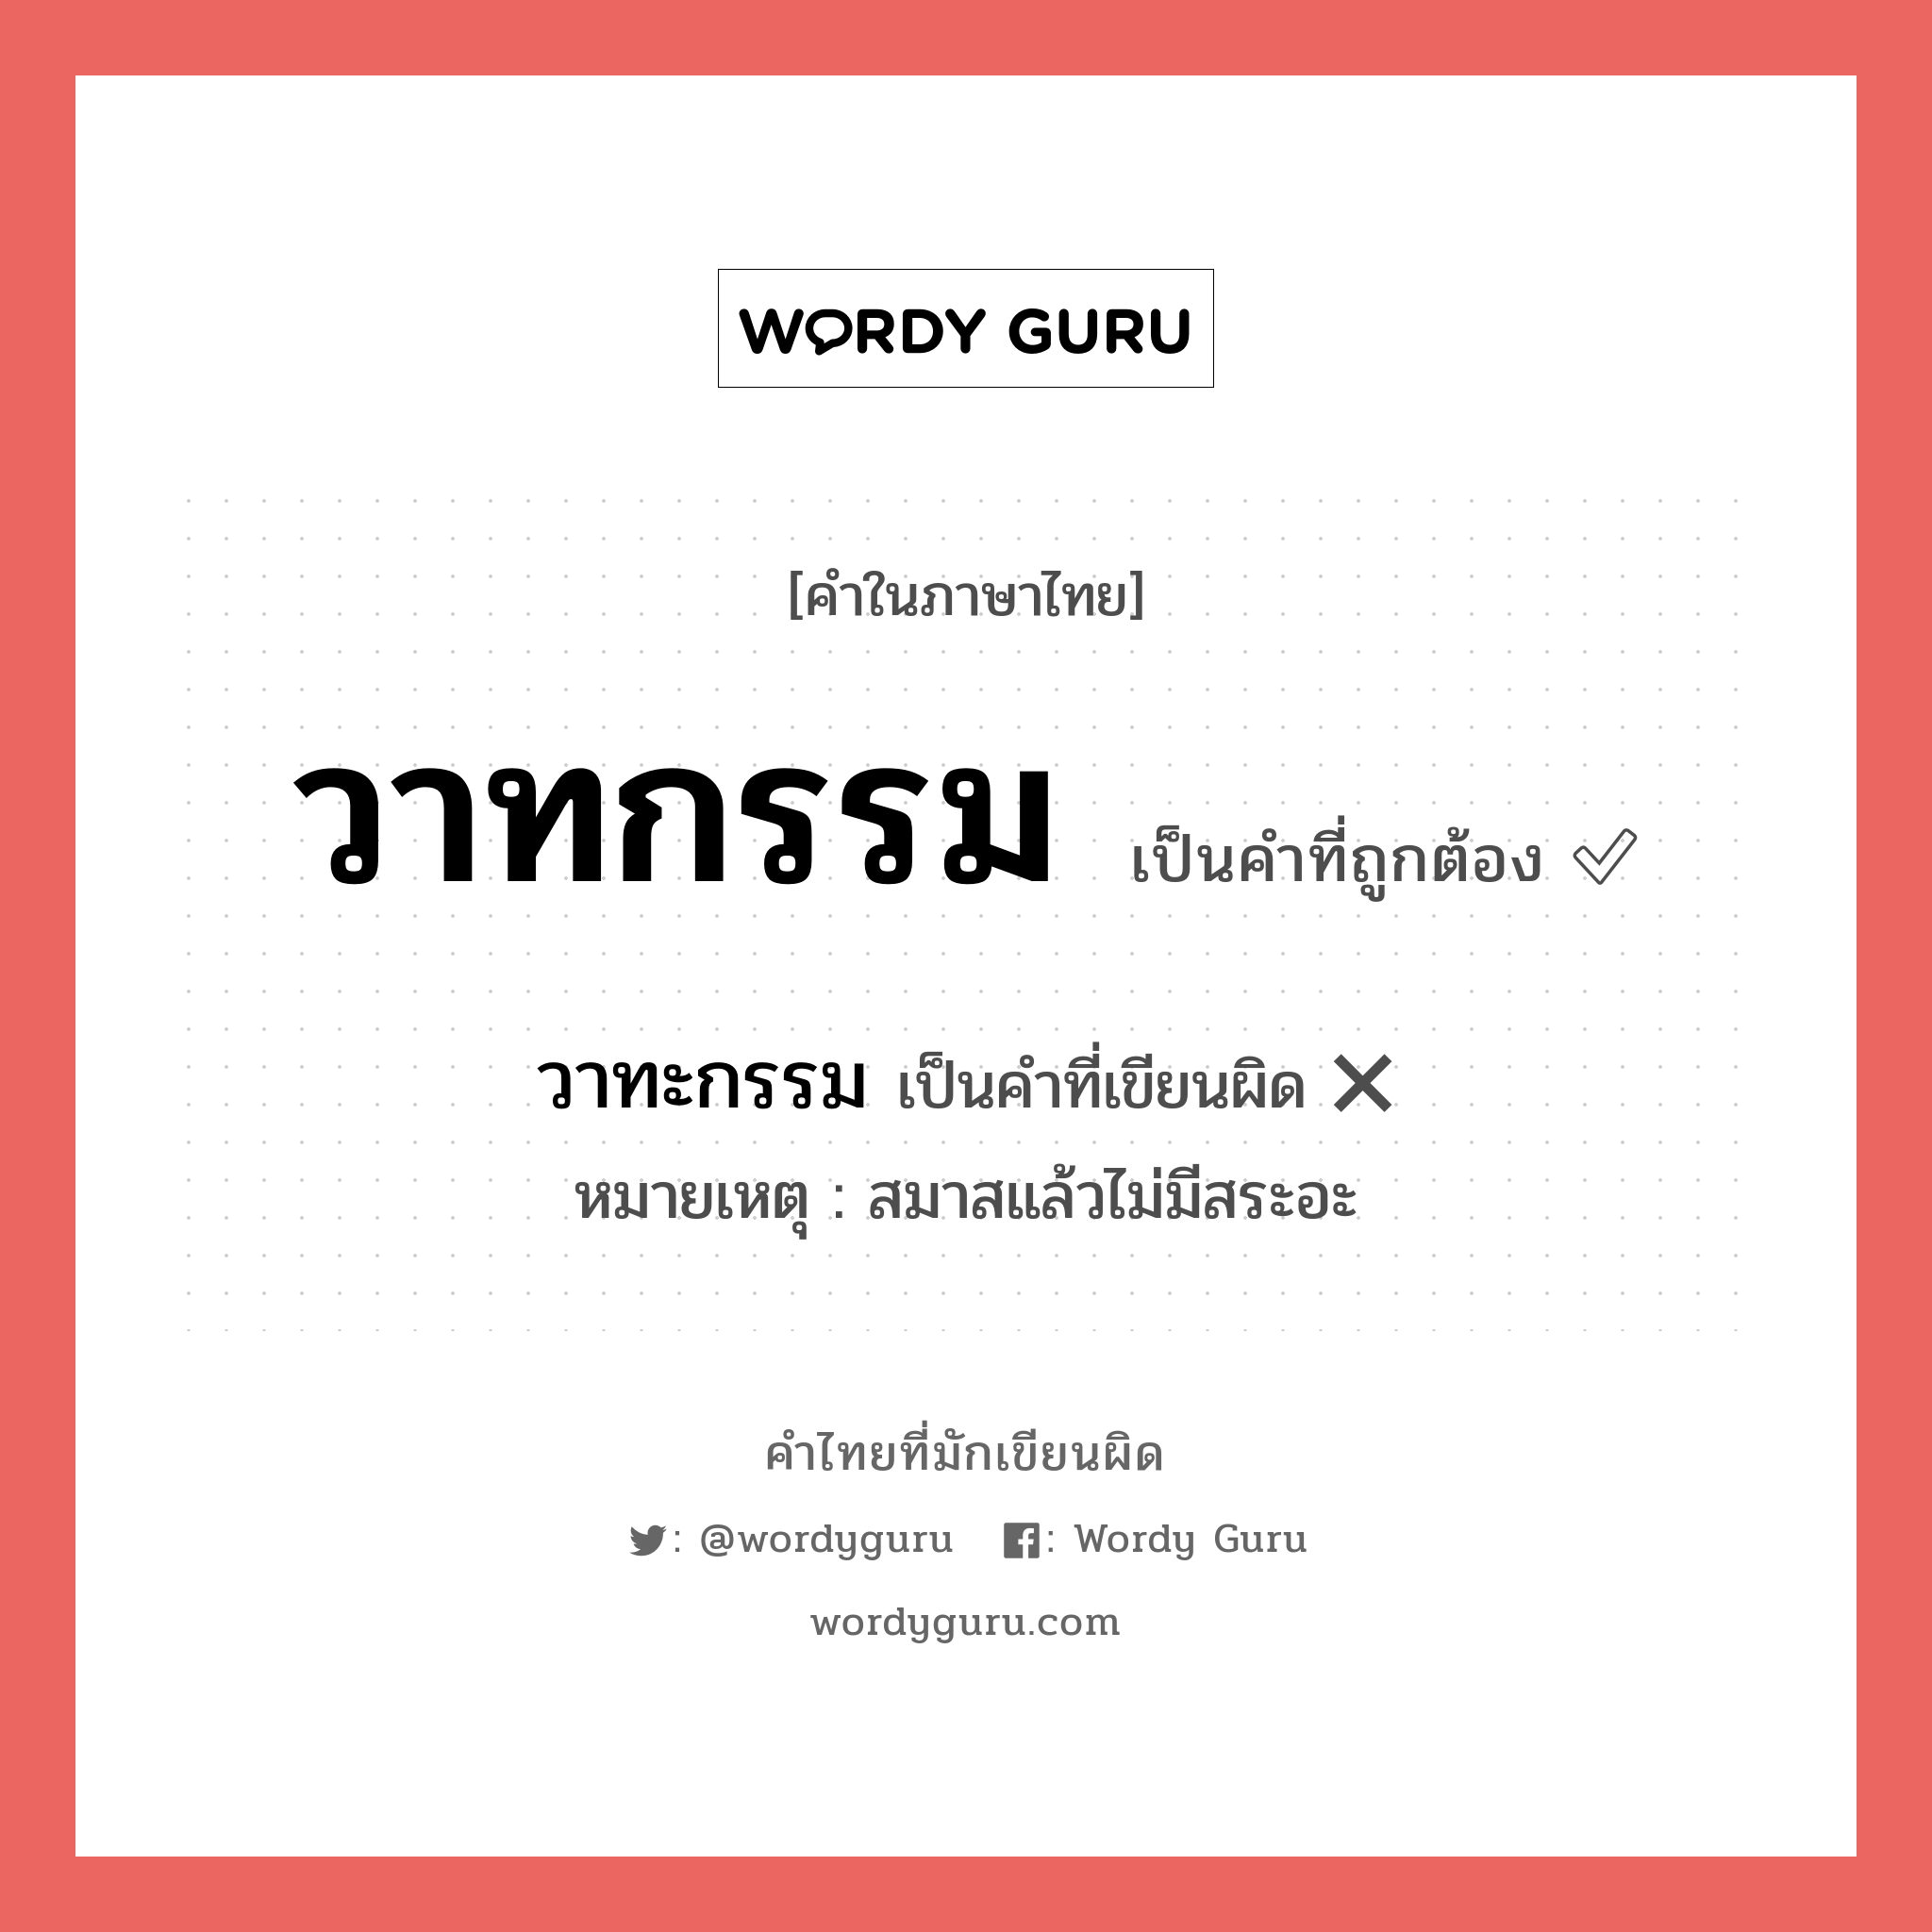 วาทะกรรม หรือ วาทกรรม คำไหนเขียนถูก?, คำในภาษาไทยที่มักเขียนผิด วาทะกรรม คำที่ผิด ❌ วาทกรรม หมายเหตุ สมาสแล้วไม่มีสระอะ